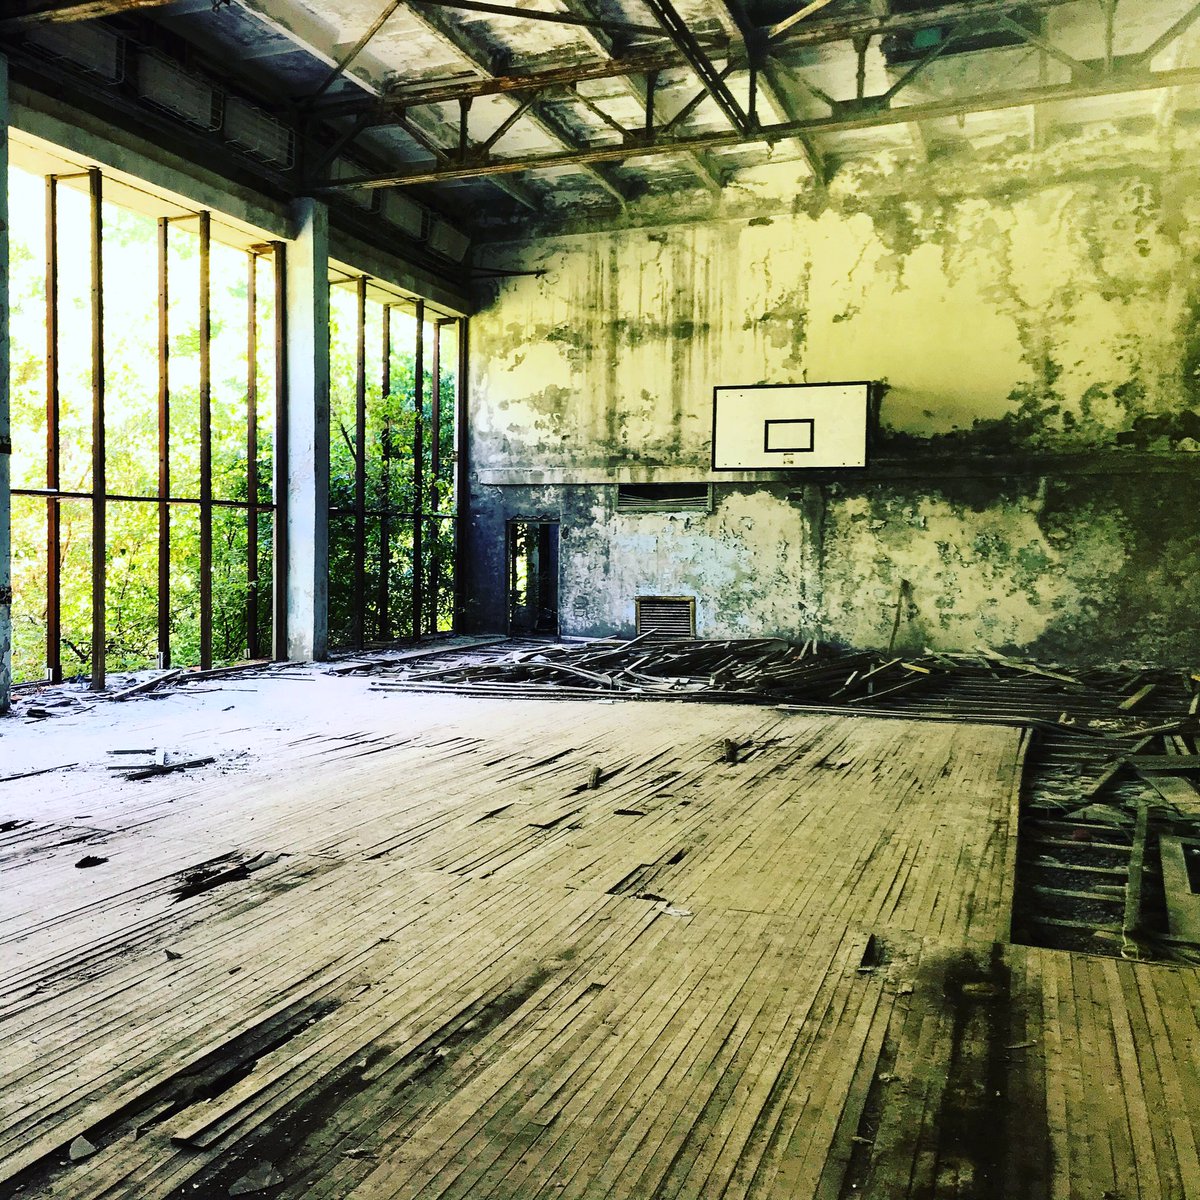 Une fois arrivés sur place nous partons à pied visiter la ville. Nous commençons par la piscine. Et la salle de sport. Tout est délabré est tombe en ruine. La végétation a envahi les lieux.  #Tchernobyl  (Plus de photos:  http://Instagram.com/nashtagstagram )